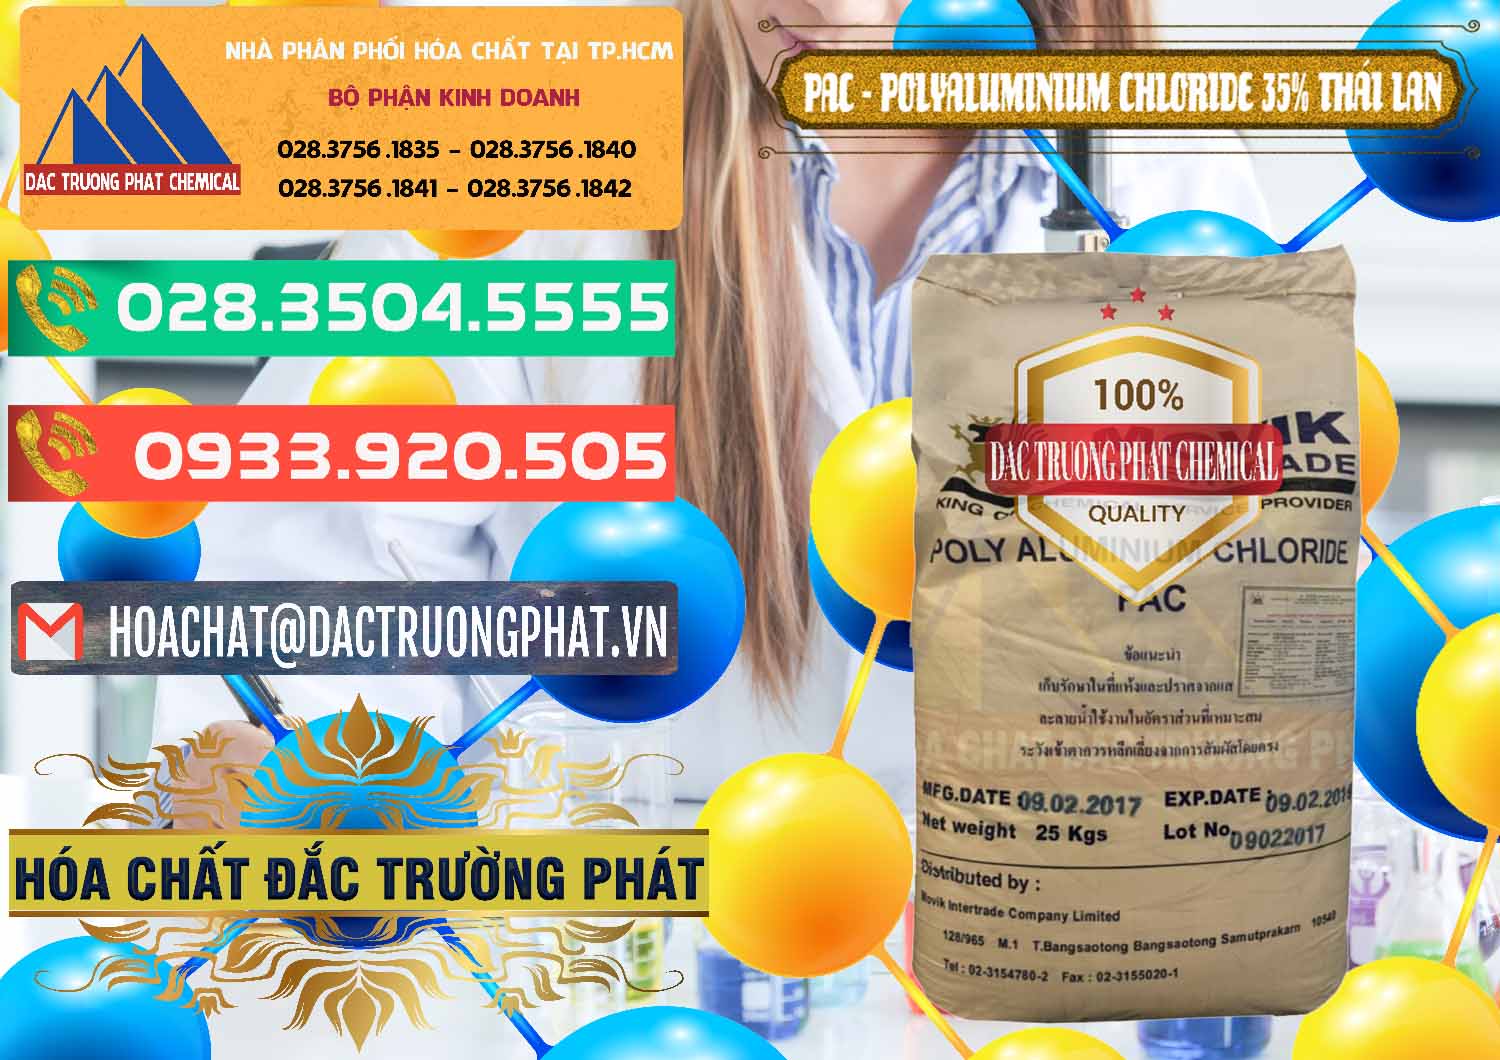 Nơi kinh doanh - bán PAC - Polyaluminium Chloride 35% Thái Lan Thailand - 0470 - Công ty chuyên bán ( phân phối ) hóa chất tại TP.HCM - congtyhoachat.com.vn